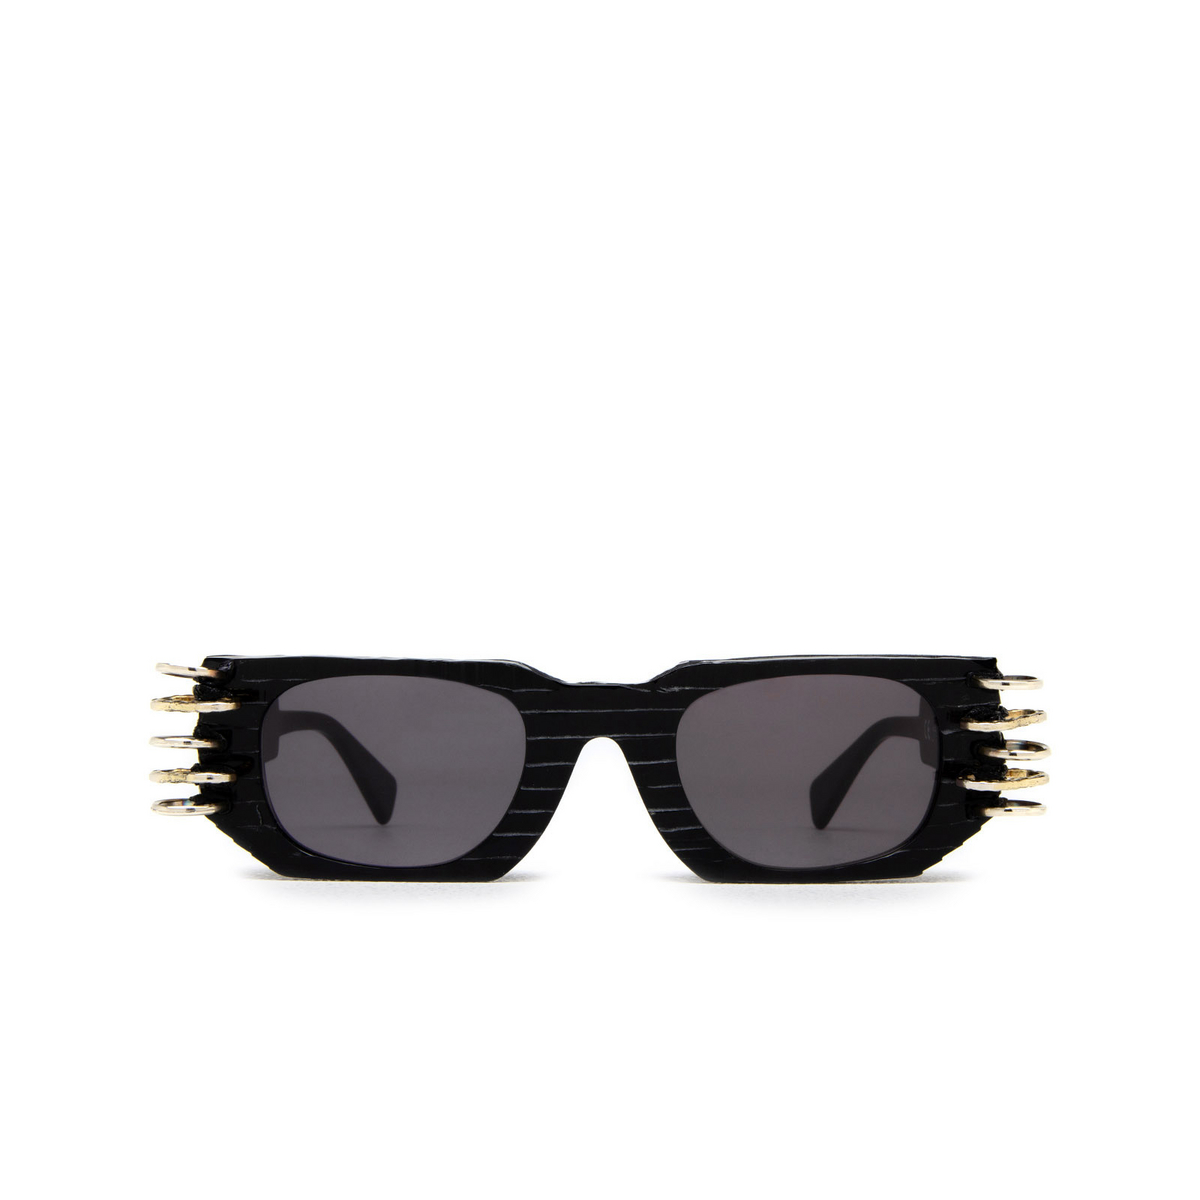 Kuboraum U8 Sunglasses BM LTD Black Matt Limited Edition - front view